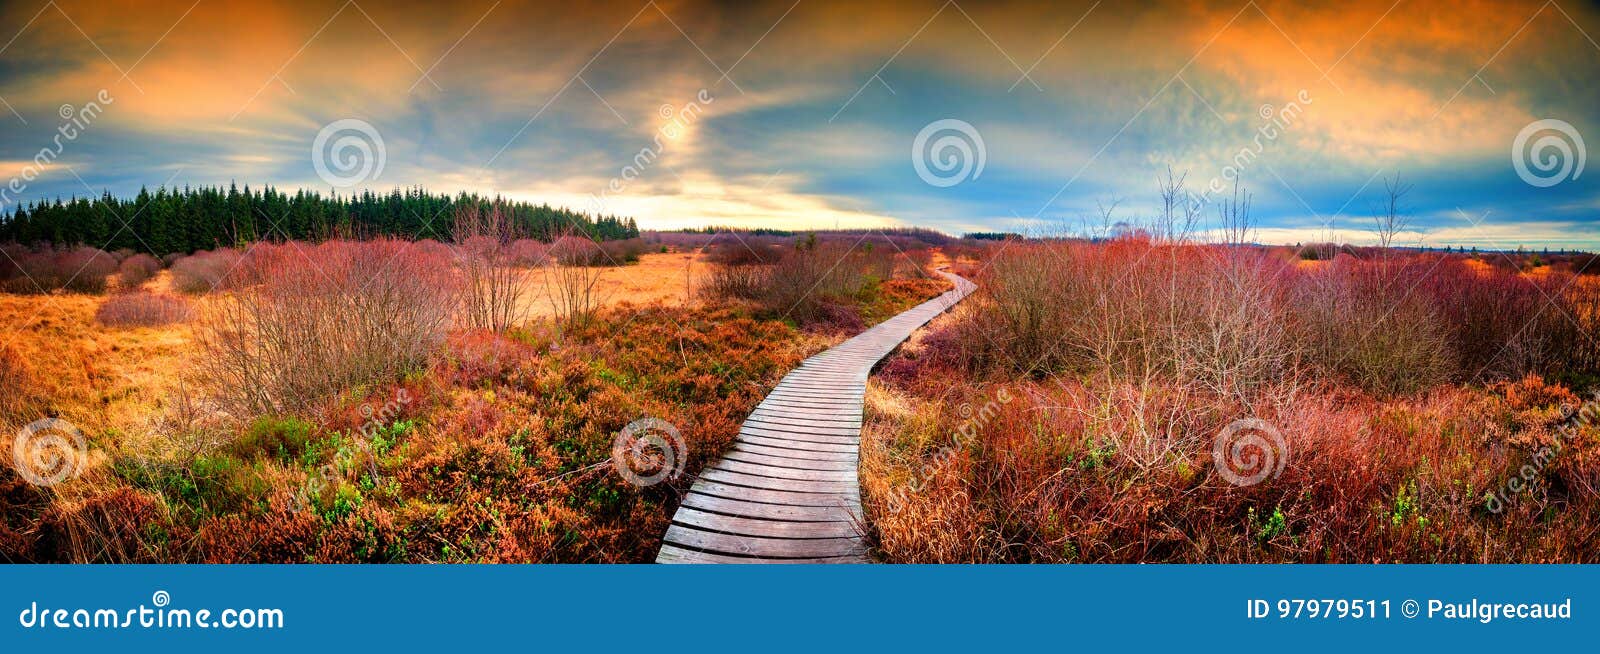 Paesaggio panoramico di autunno con il percorso di legno Backgro della natura di caduta